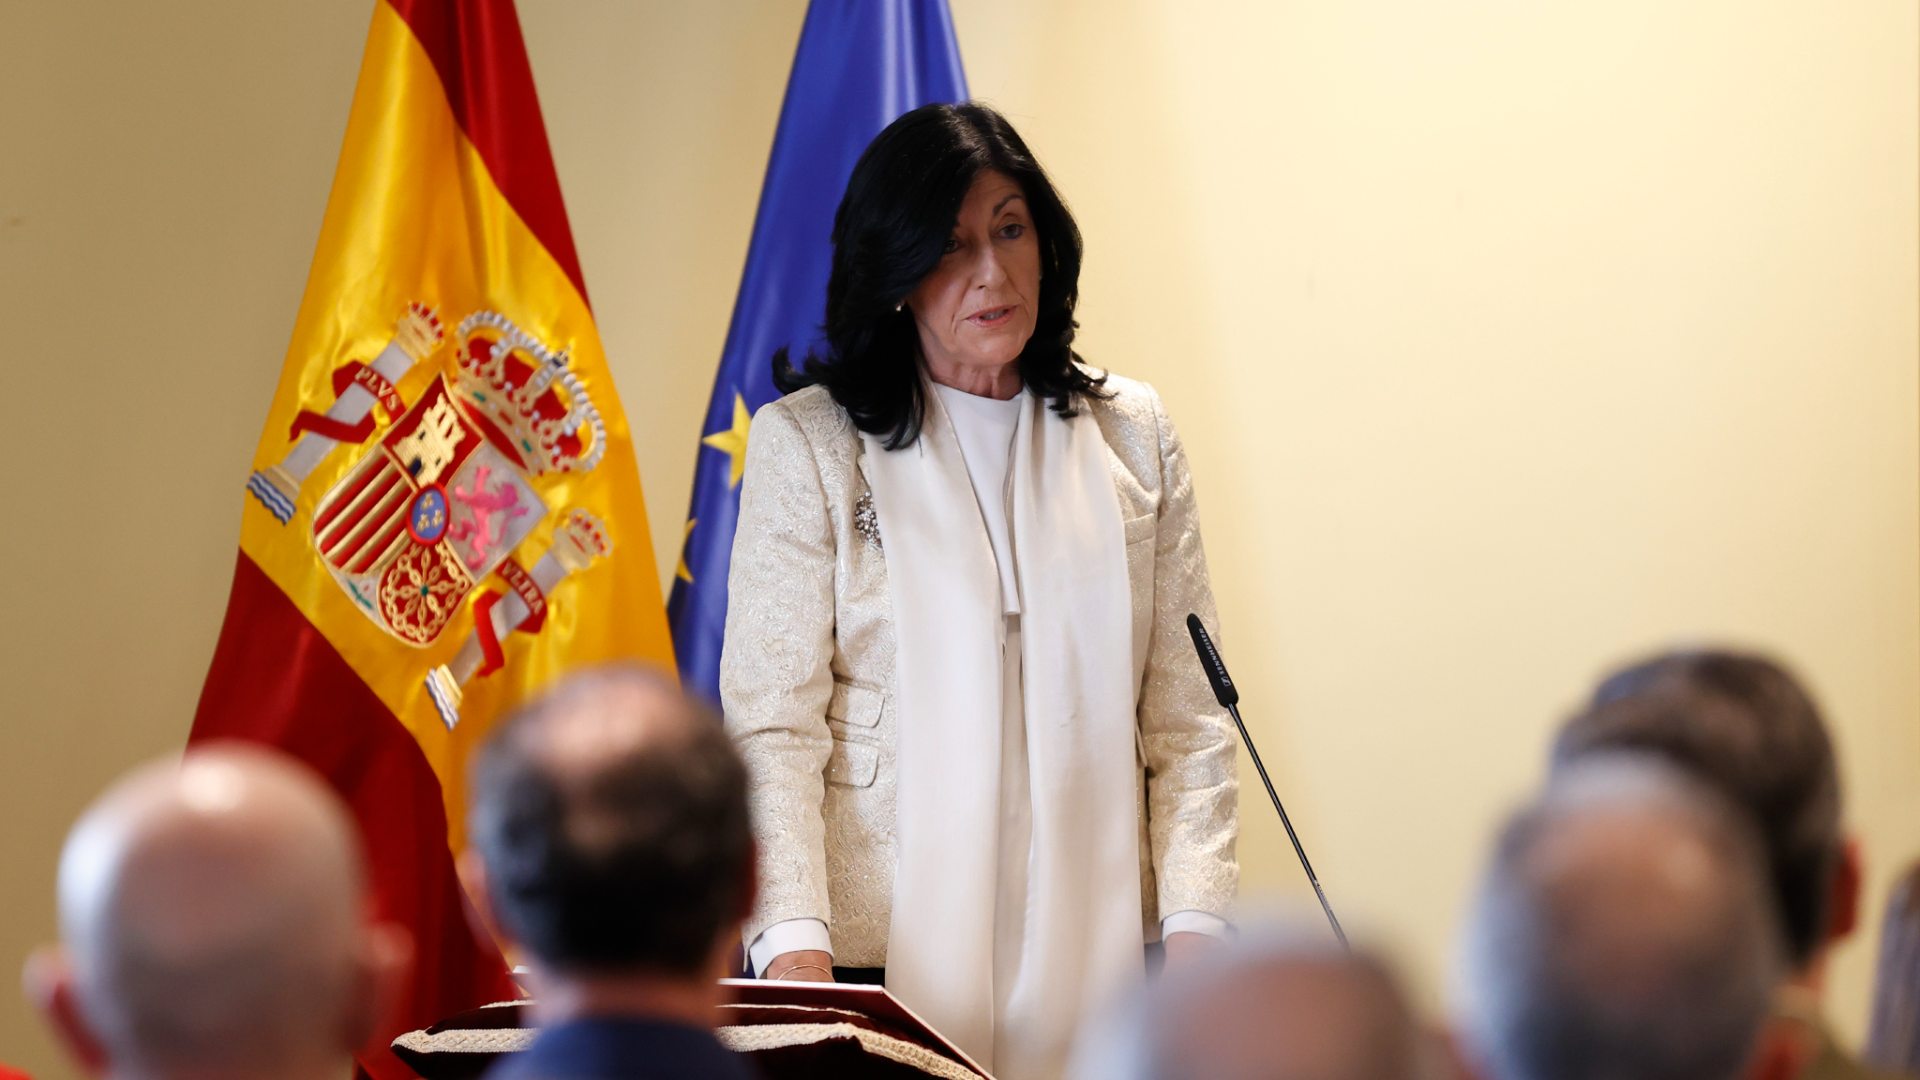 Ir al Video La nueva directora del CNI toma posesión agradeciendo a Esteban su "esfuerzo y dedicación": "Estamos al servicio de España"